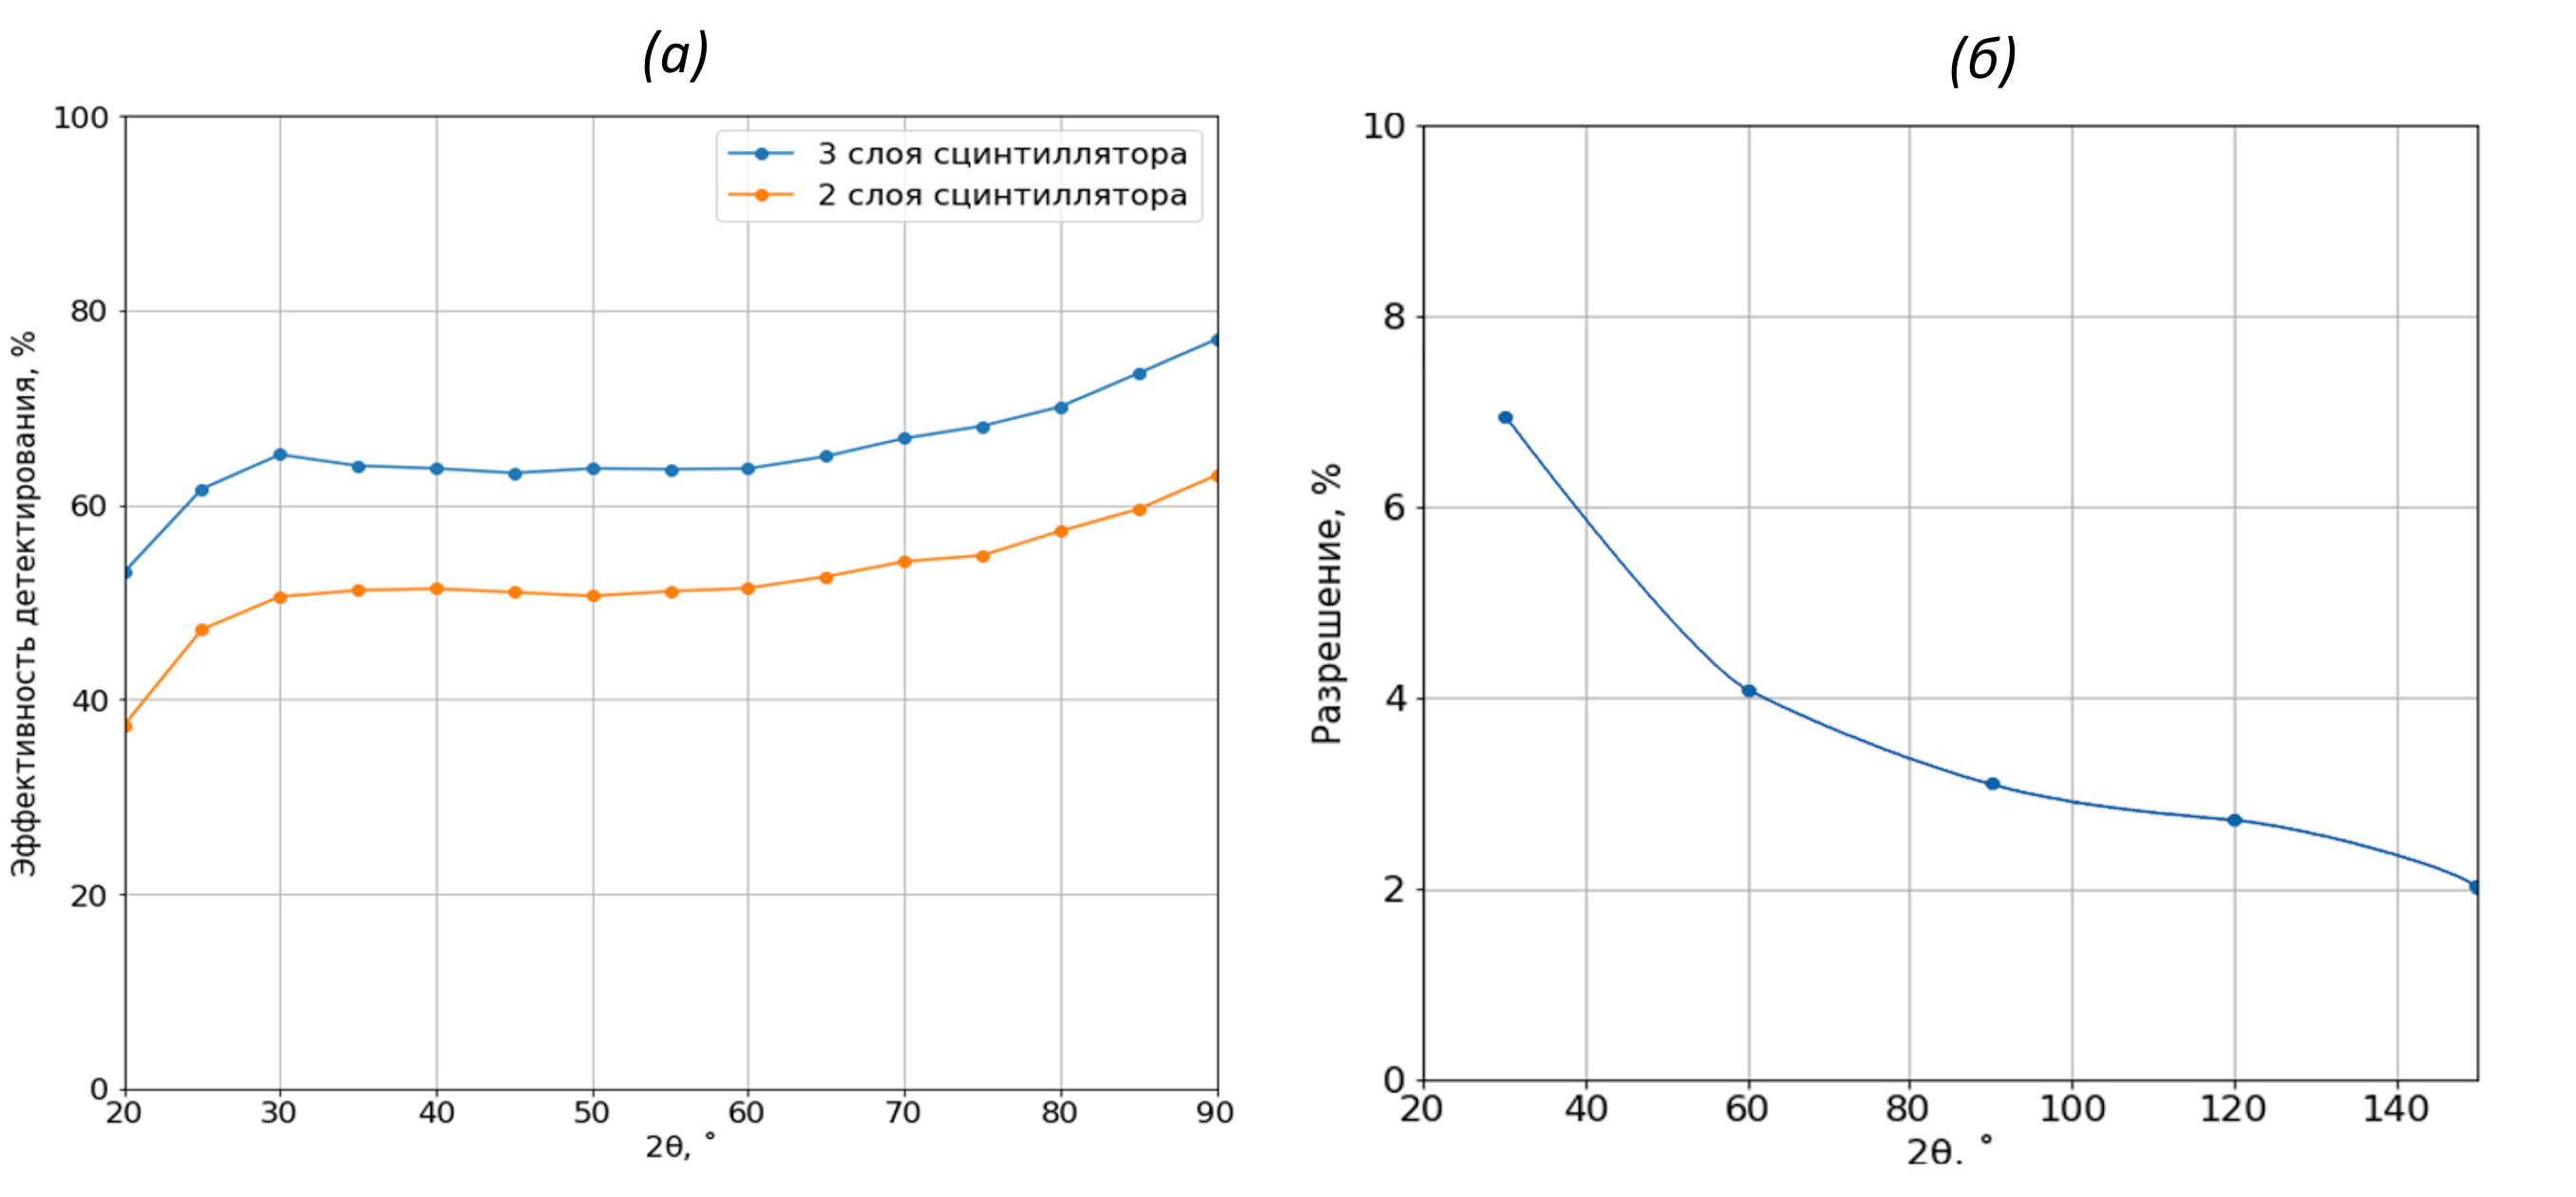 Эффективность регистрации нейтронов счетчиками с двумя и тремя слоями детектирующих слоев при различных углах рассеяния нейтронов 2θ (а), разрешающая способность нейтронного счетчика как функция угла рассеяния 30° < 2θ < 150° (б)